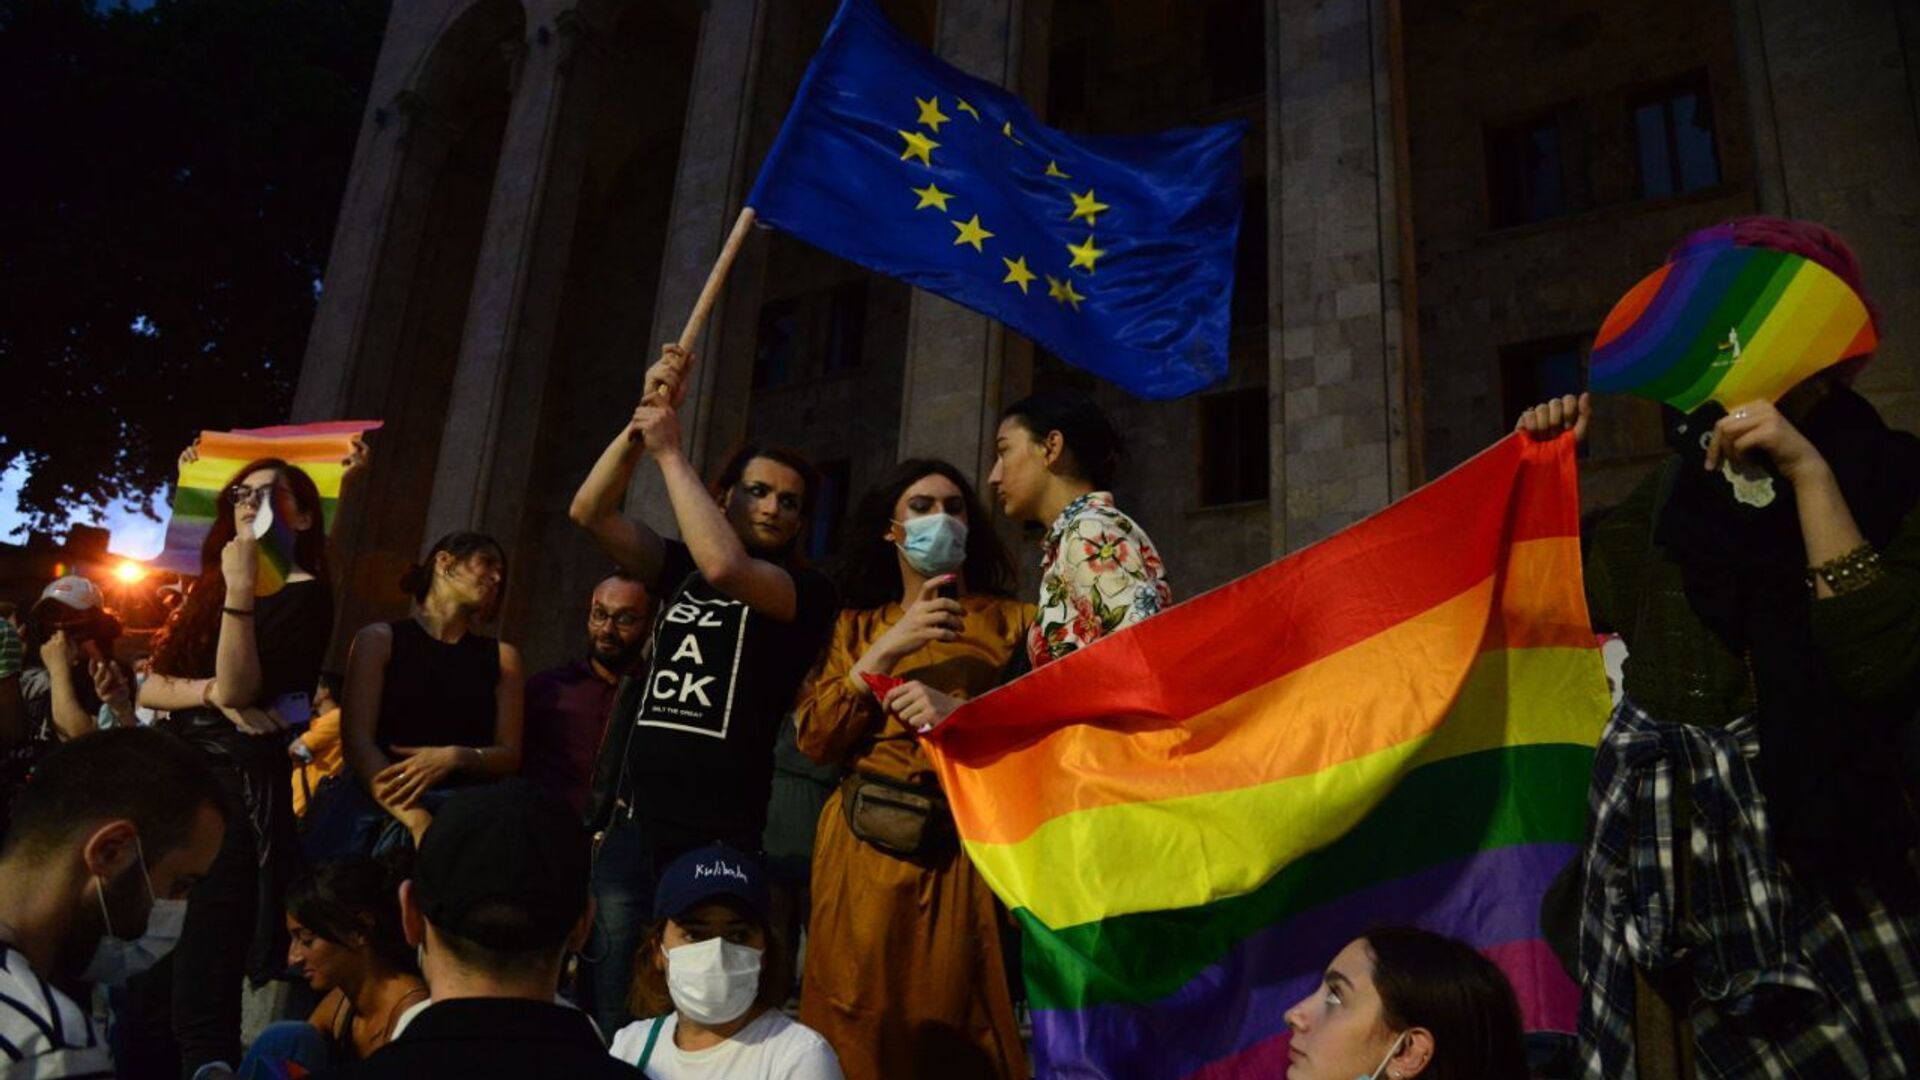 Противостояние у парламента Грузии 6 июля 2021 года. Сторонники ЛГБТ на акции молчания - Sputnik Грузия, 1920, 07.07.2021